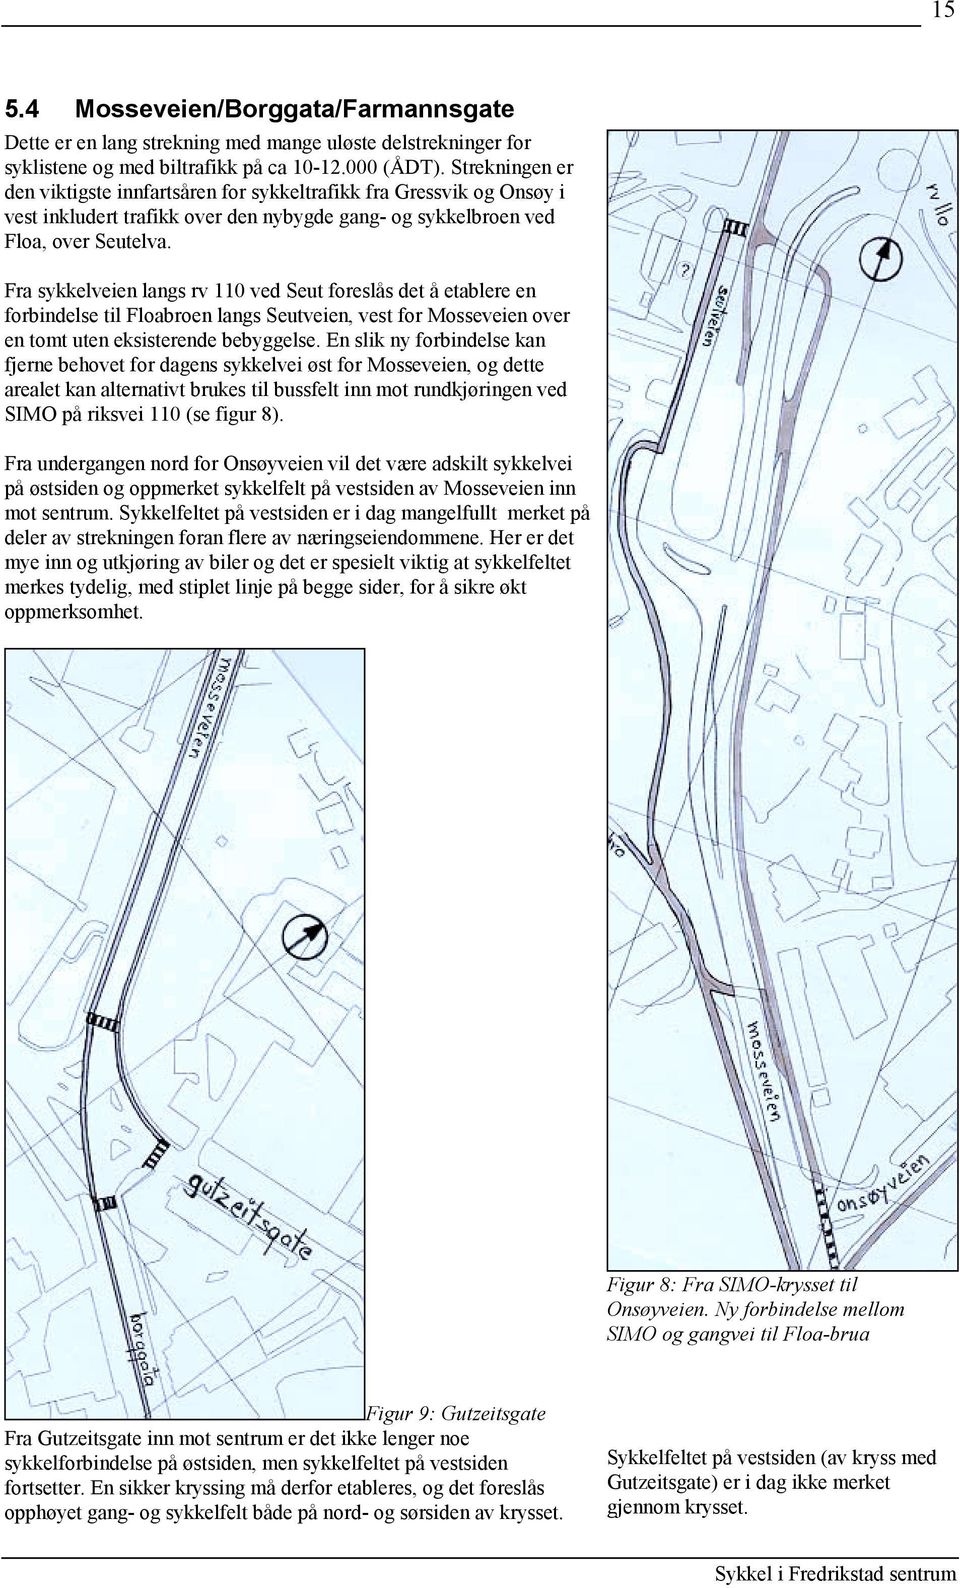 Fra sykkelveien langs rv 110 ved Seut foreslås det å etablere en forbindelse til Floabroen langs Seutveien, vest for Mosseveien over en tomt uten eksisterende bebyggelse.